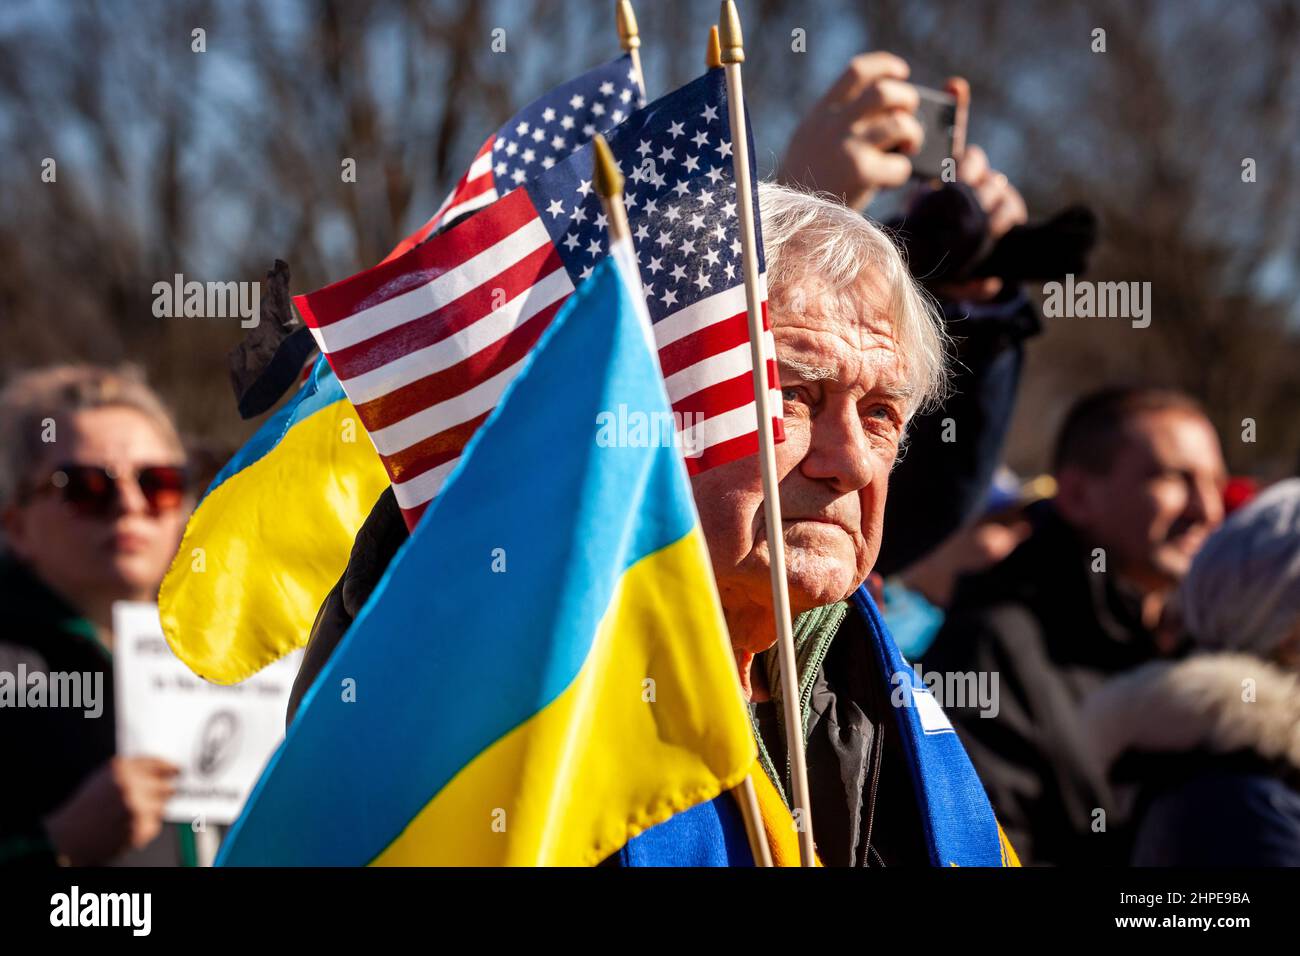 Washington, DC, États-Unis, 20 février 2022. Photo : un manifestant détient les drapeaux ukrainien et américain lors d'un rassemblement de solidarité pour l'Ukraine. Des milliers de personnes ont assisté à l'événement pour soutenir l'indépendance, la souveraineté et l'intégrité territoriale de l'Ukraine alors que le président russe Vladimir Poutine menace l'invasion avec des troupes mobilisées à la frontière. L'événement a été parrainé par Razom, une organisation ukrainienne de plaidoyer, et a inclus une veillée pour la Sotnia Heavenly Hundred/Nebesna (ceux tués pendant la révolution de la dignité de 2014), ainsi qu'une marche à la Maison Blanche. Crédit : Allison Bailey / Alamy Live News Banque D'Images